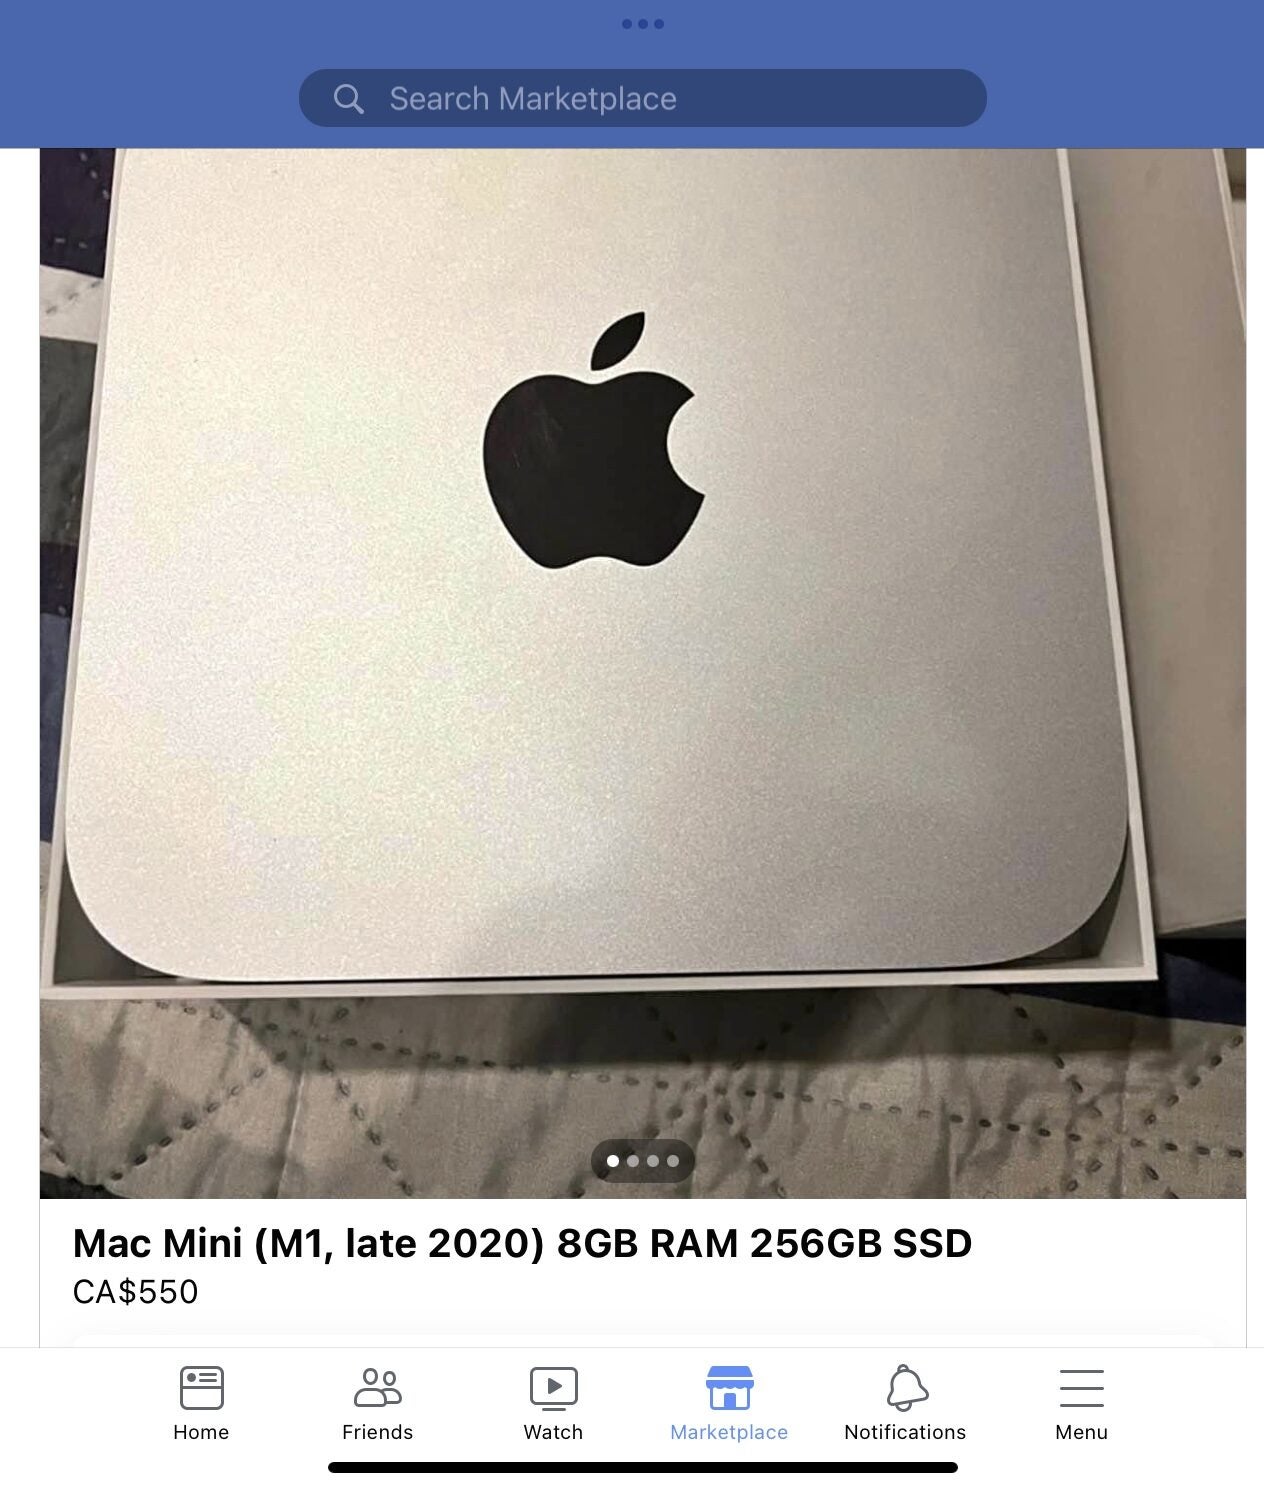 Apple] Refurbished Mac mini M1 8GB RAM / 256GB SSD Base Model